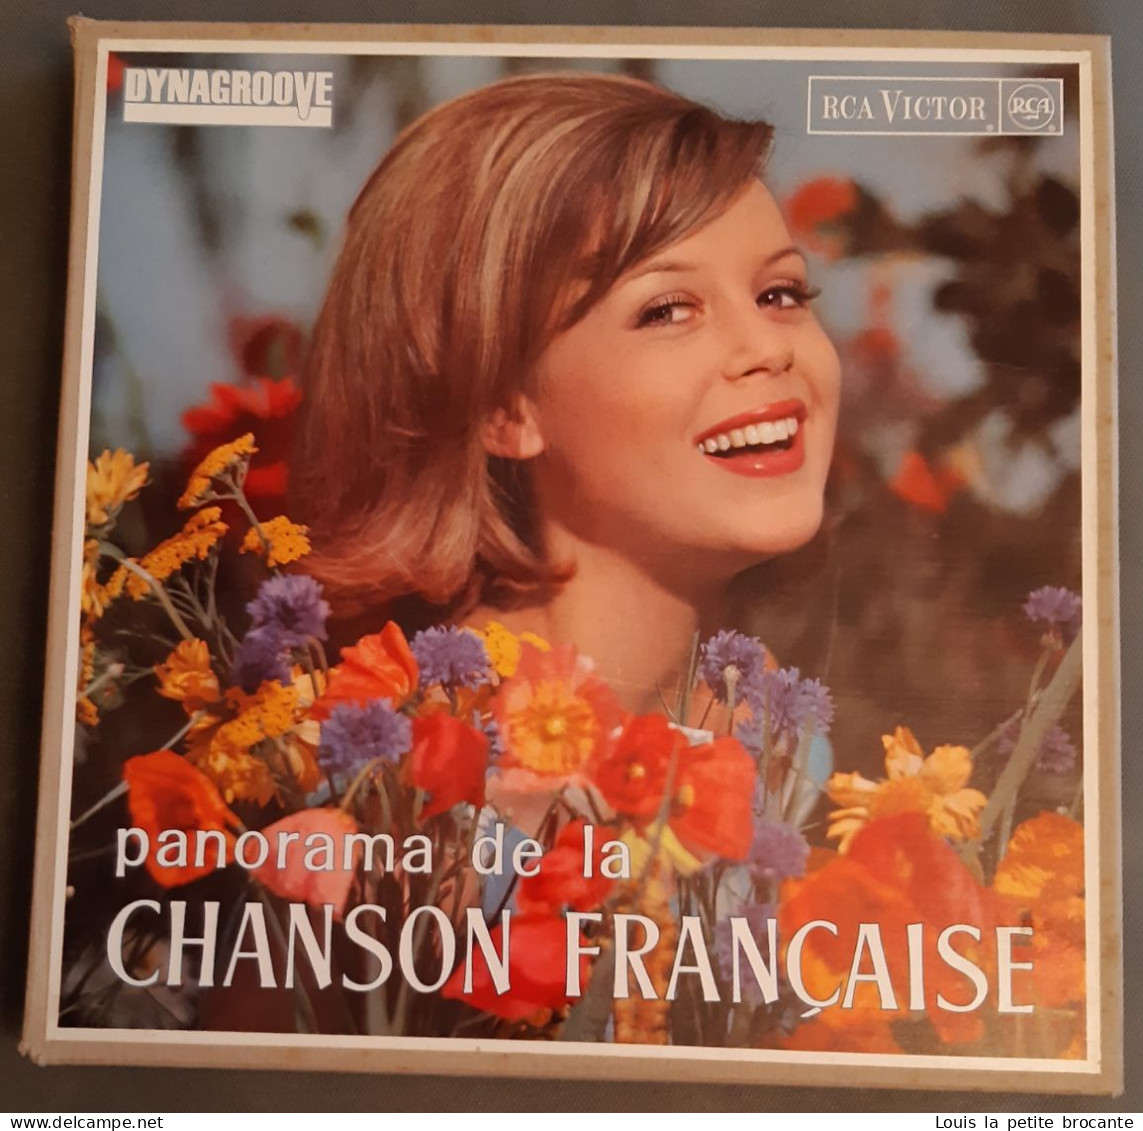 Coffret De 10 Disques Vinyles, PANORAMA DE LA CHANSON FRANCAISE - DINAGROOVE - RCA VICTOR 1964, 1 Chanson Rayée - Volledige Verzamelingen